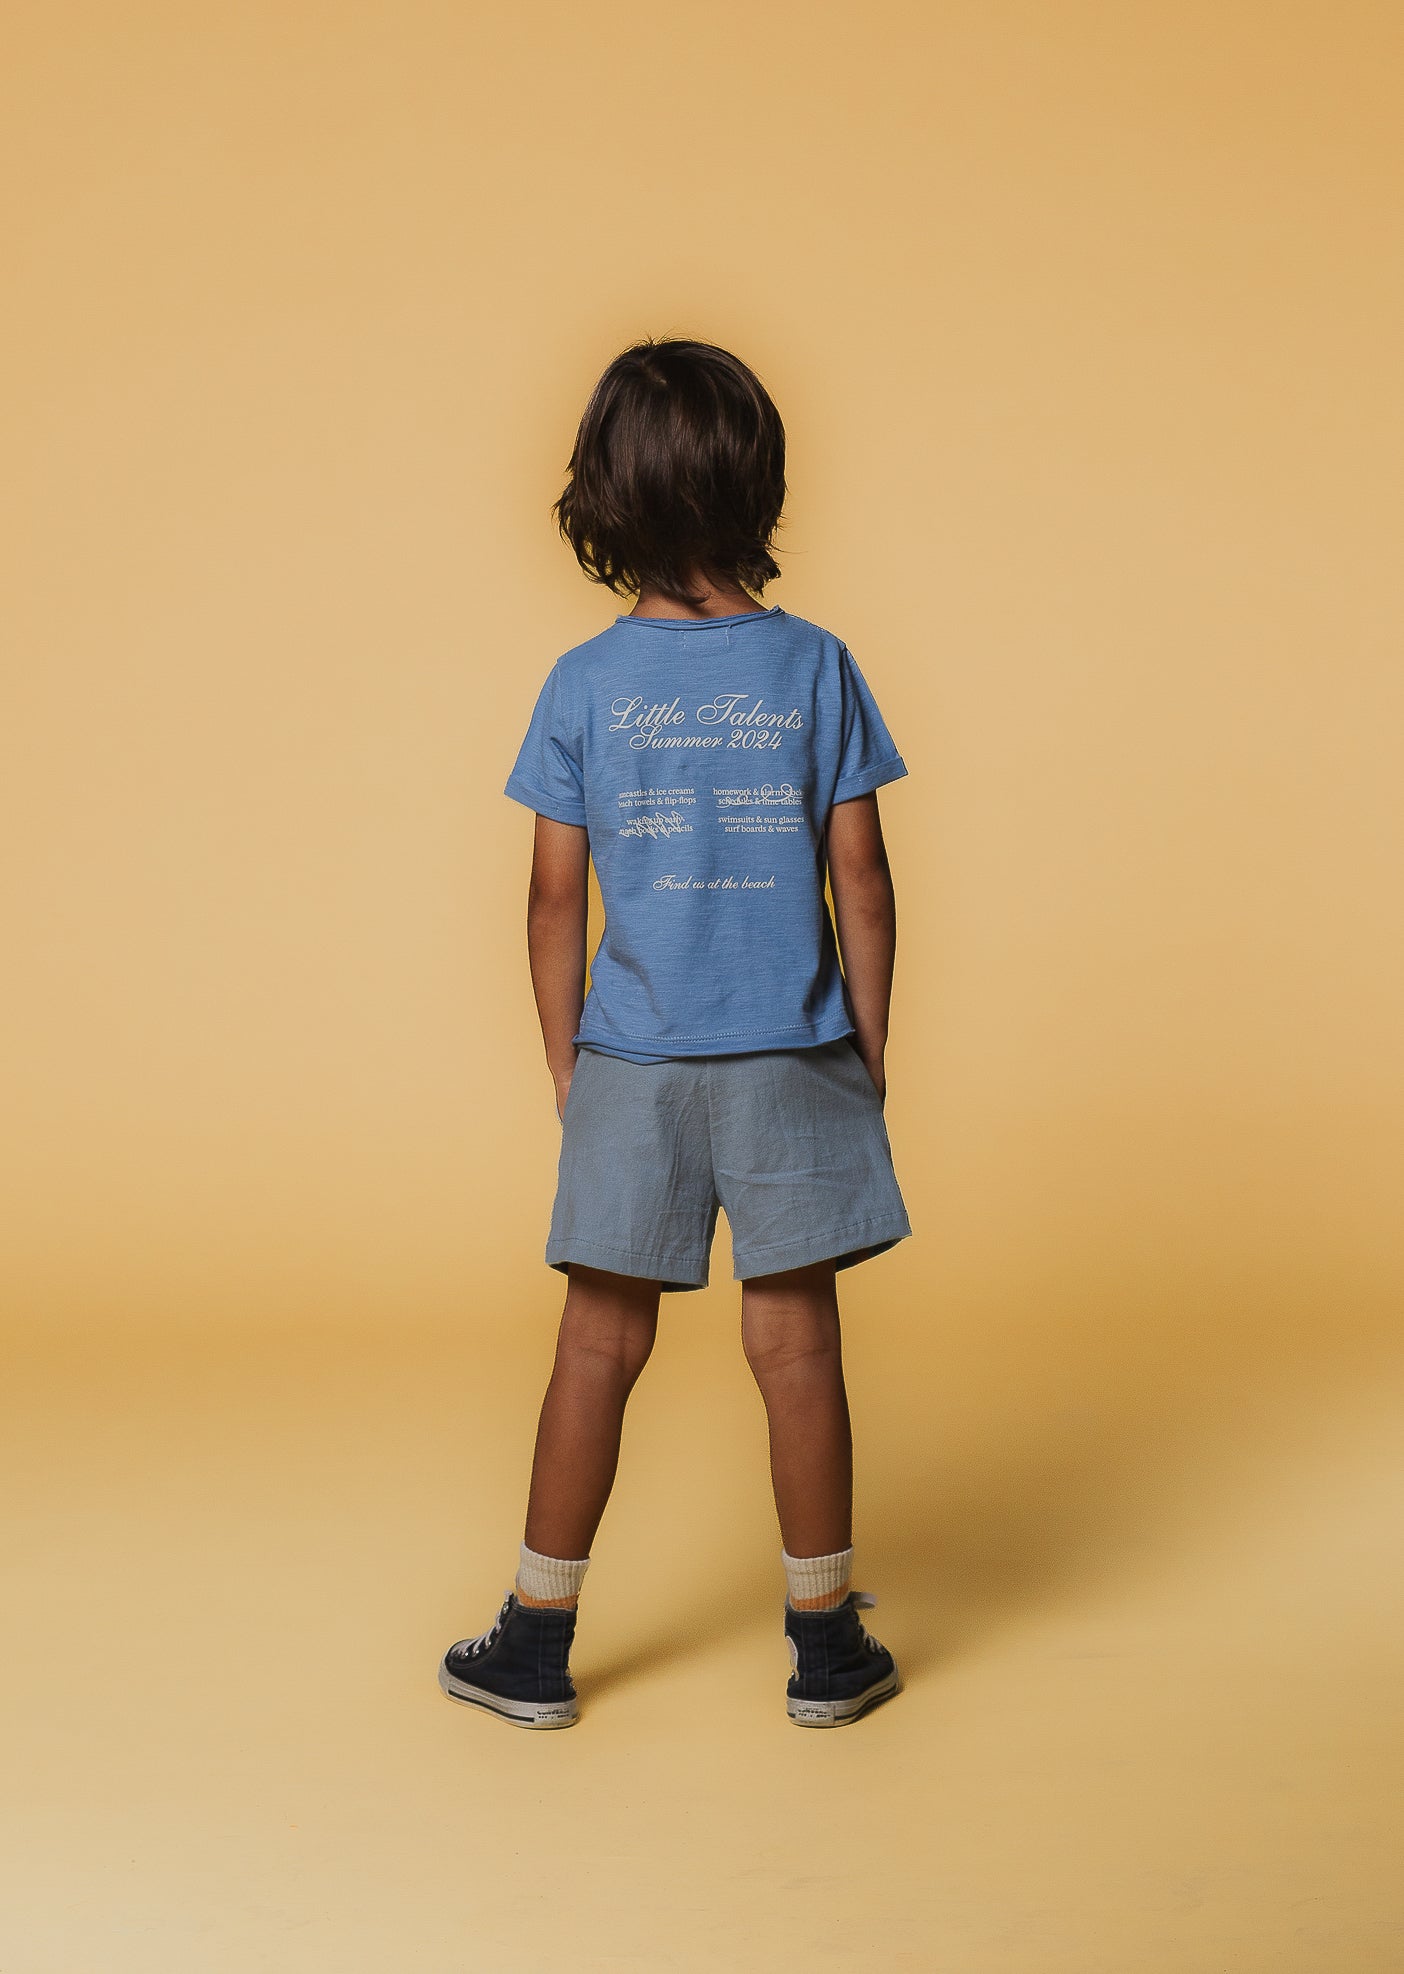 Blue Little Talents Summer 2024 t-shirt